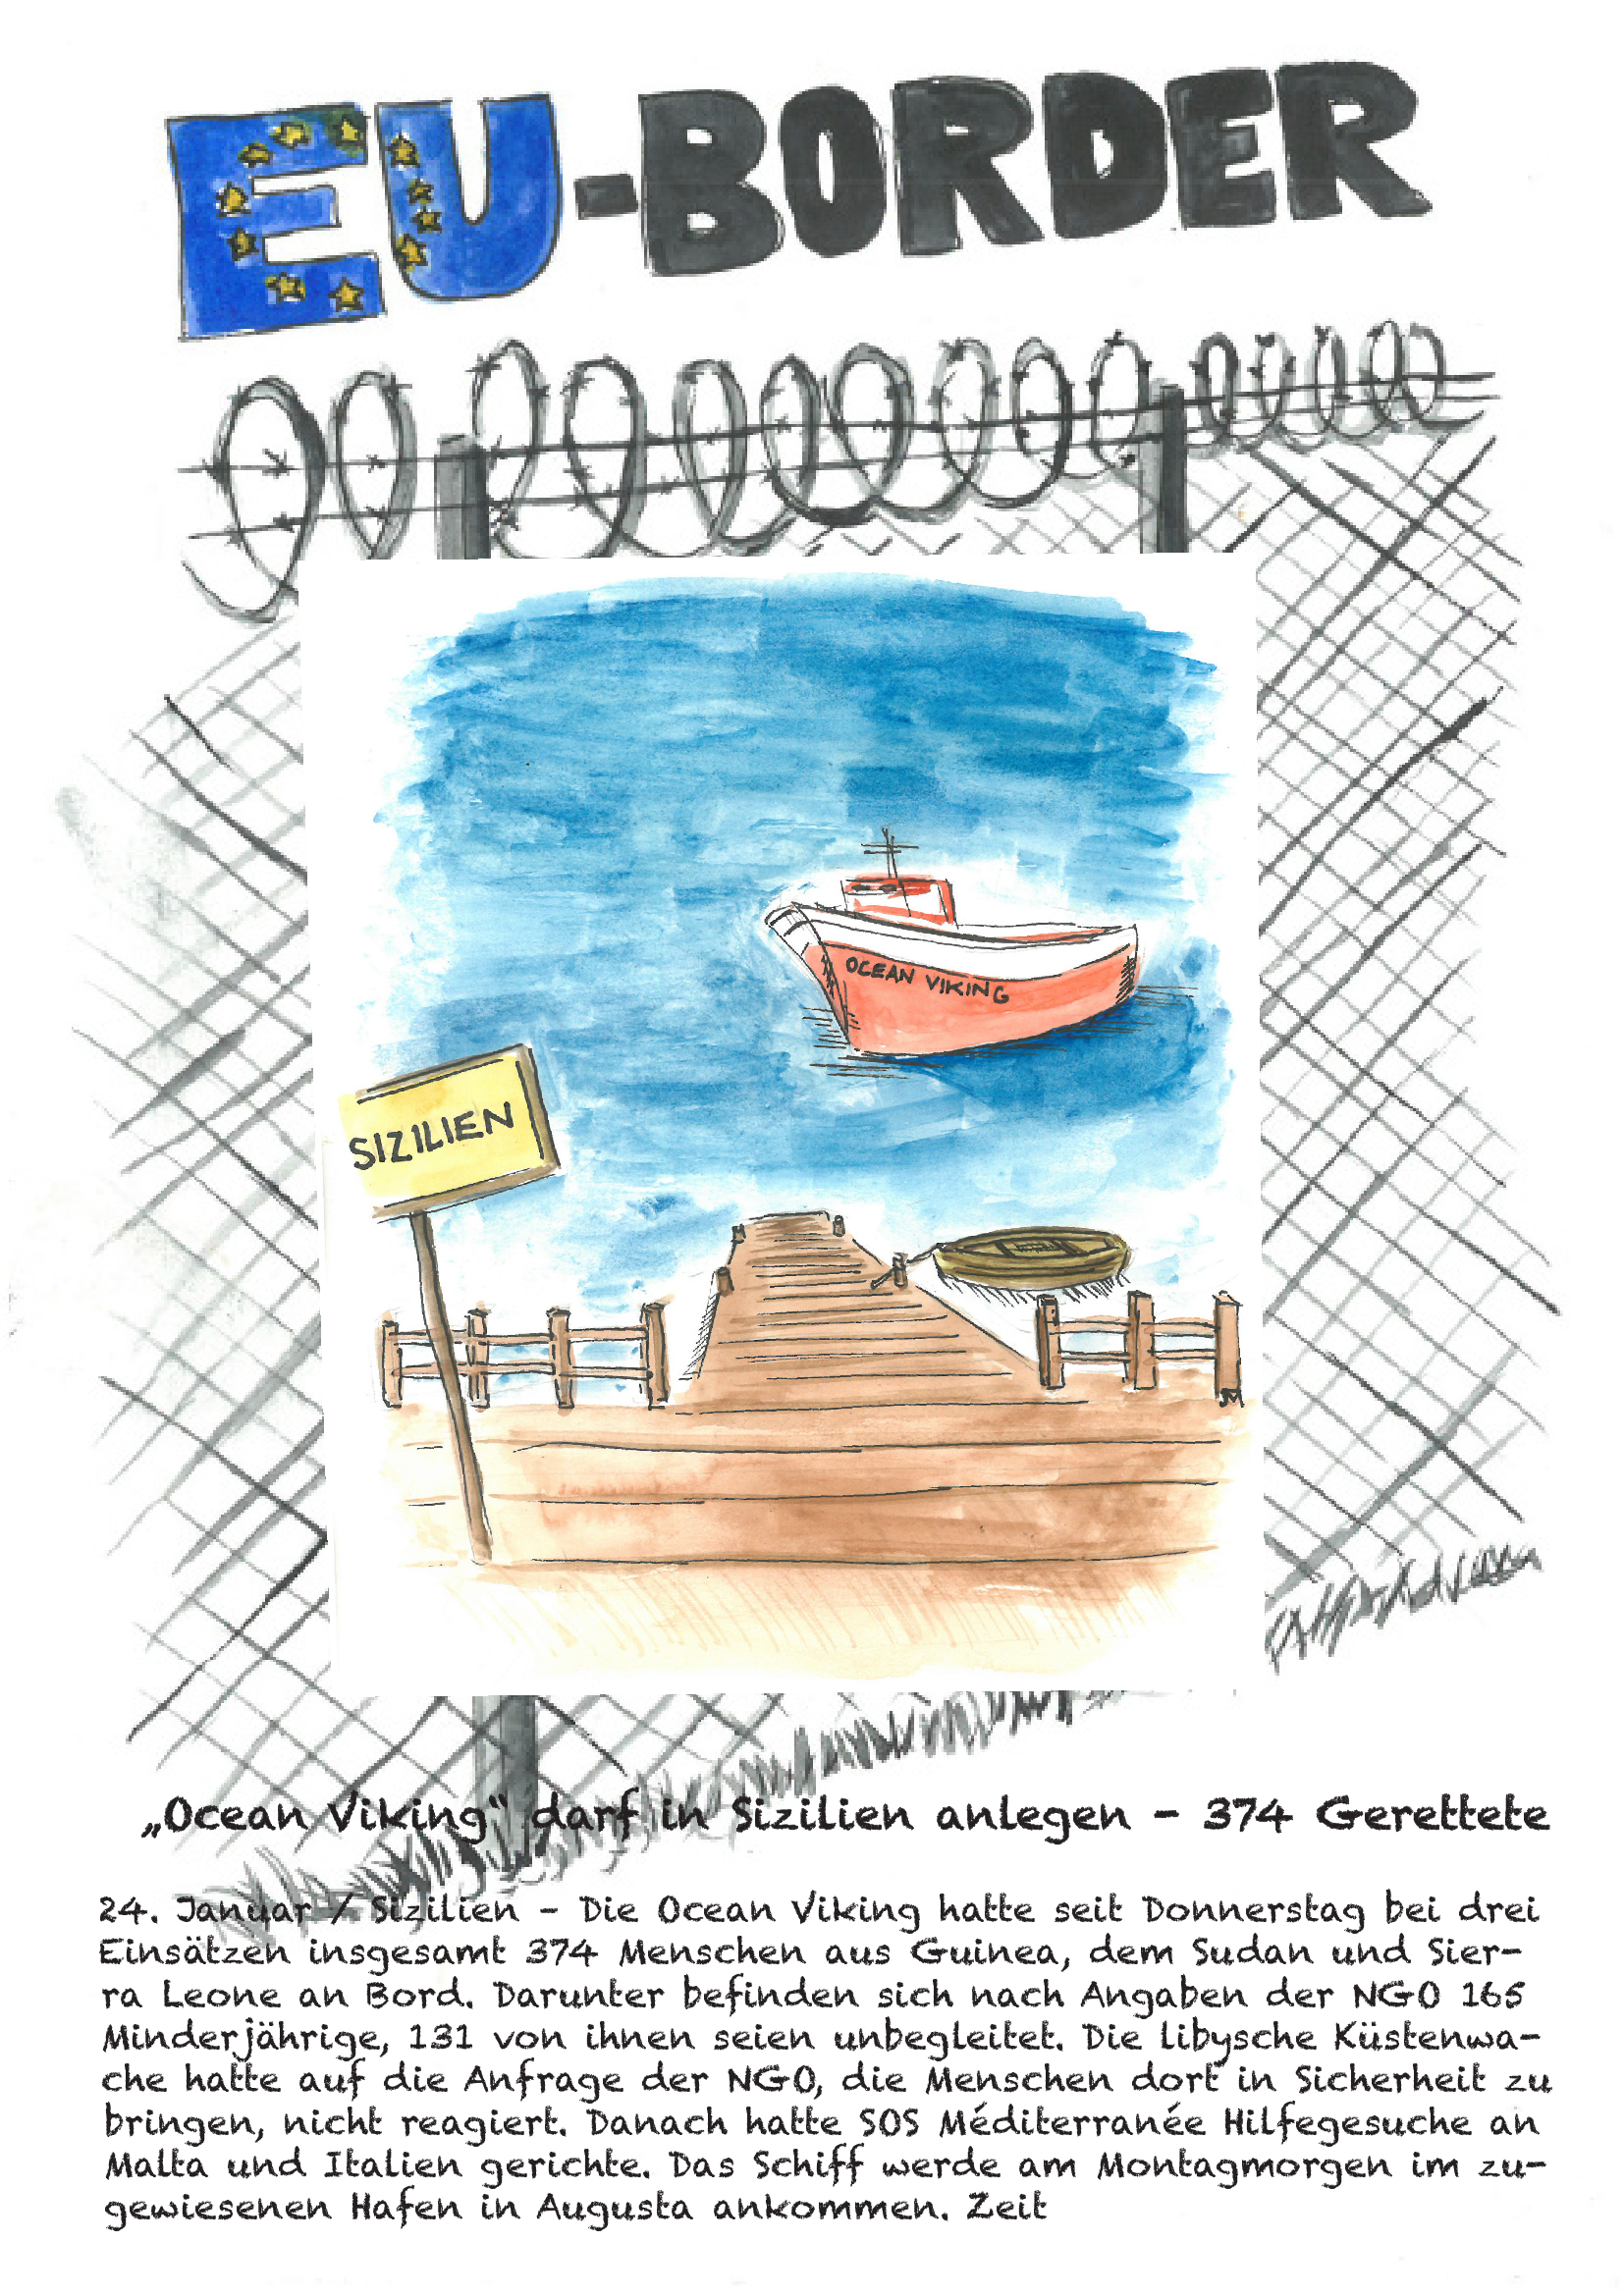 "Ocean Viking" darf in Sizilien anlegen - 374 Gerettete